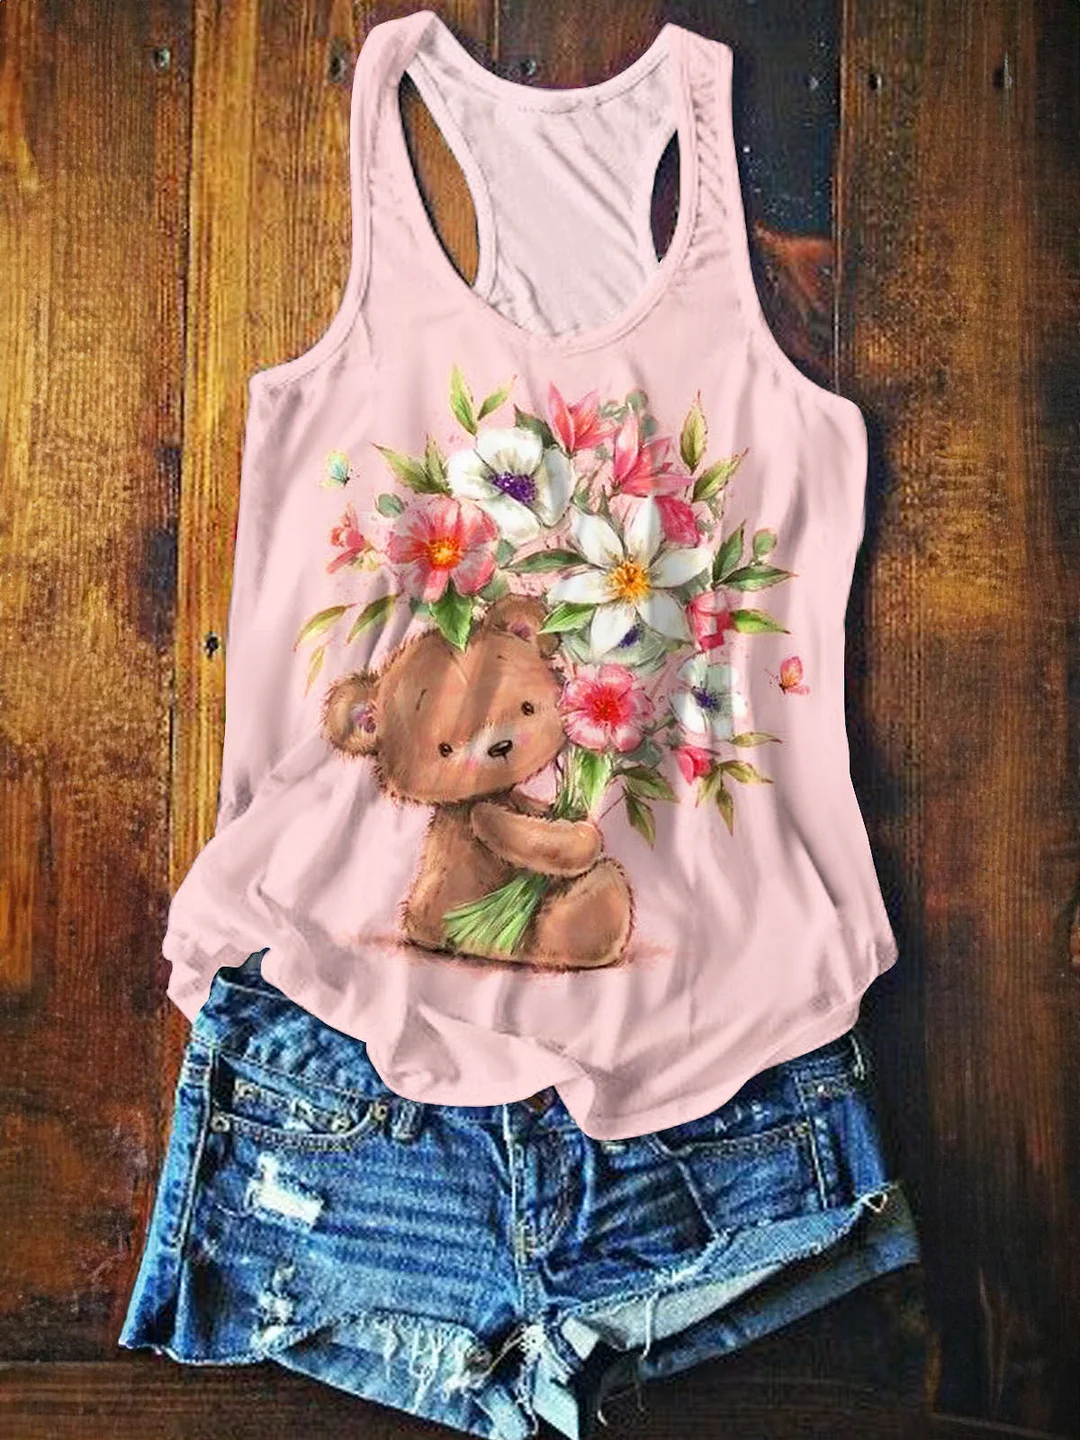 Women's Summer Cute Bear Floral Print Sleeveless Top Vest